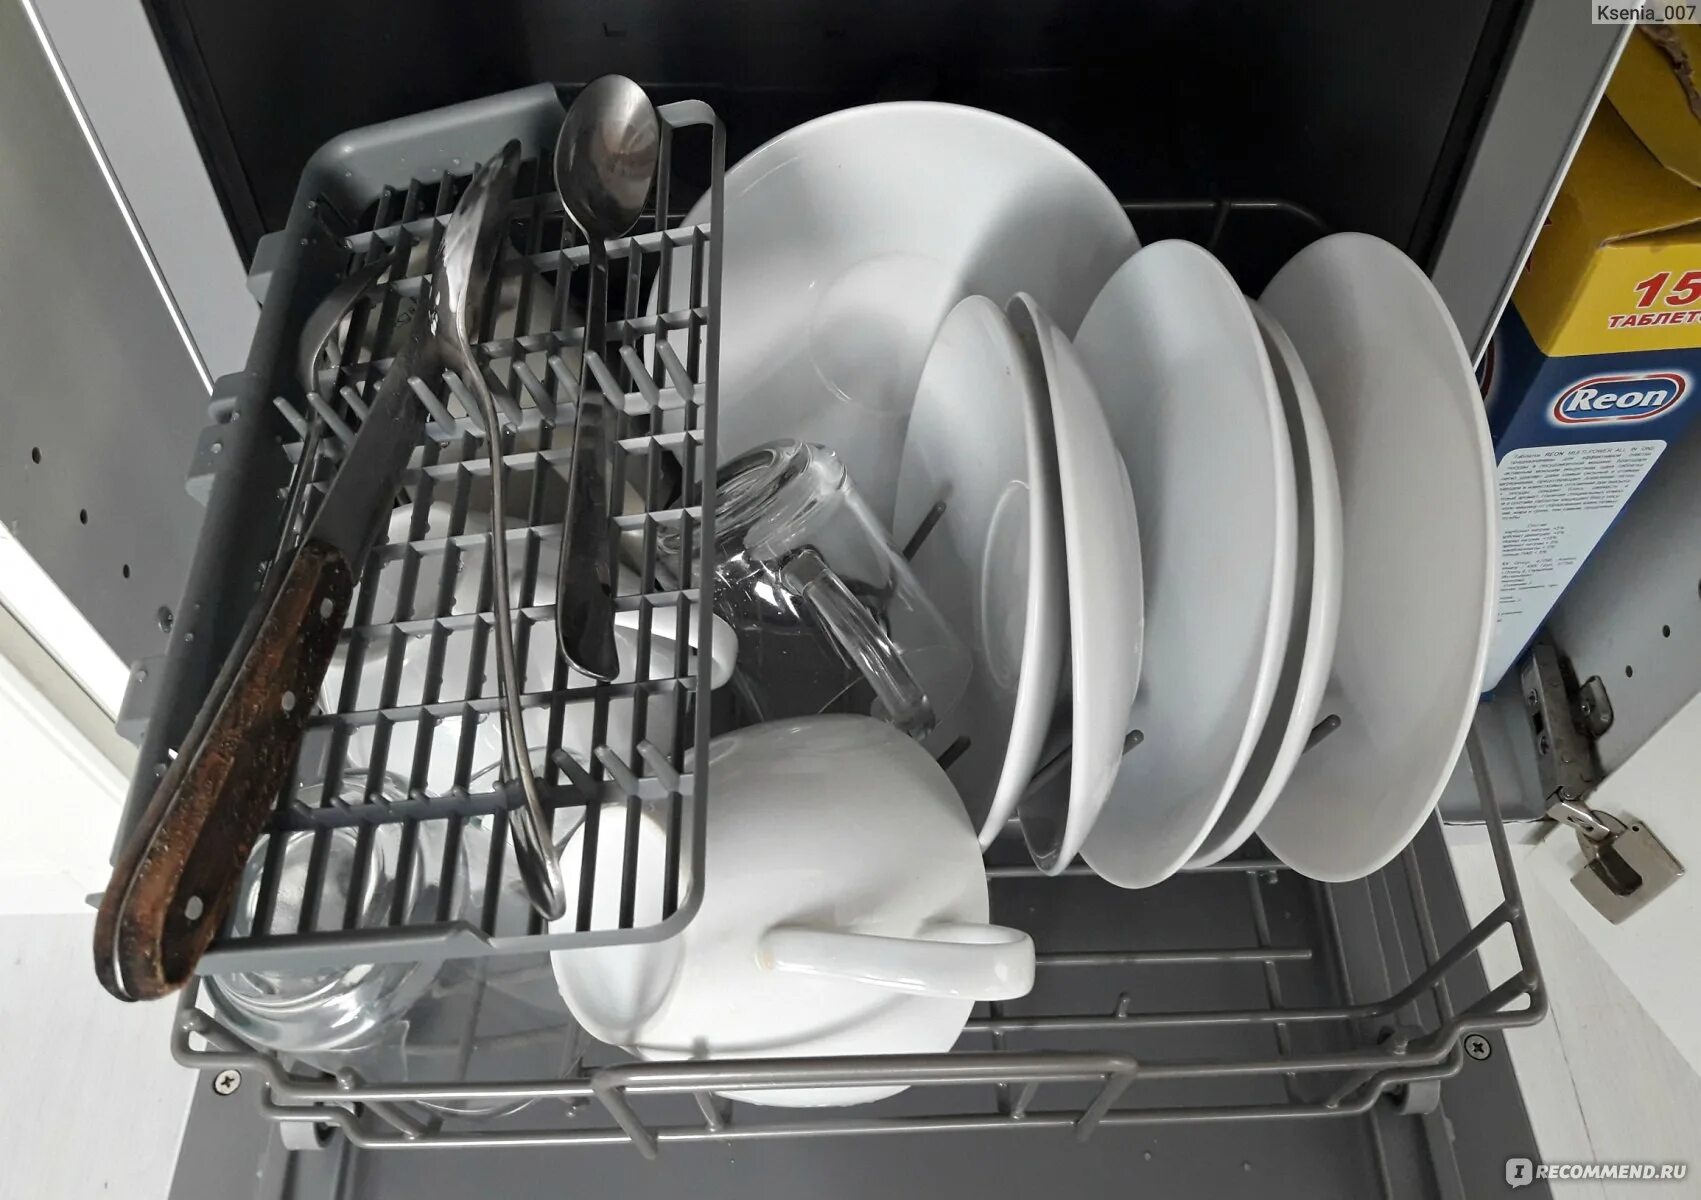 Посудомоечная машина leran cdw 42. Посудомоечная машина Leran CDW 42-043. Посудомоечной машинки Leran CDW 42-043 W Leran. Посудомойка Leran CDW 42 043w. Компактная посудомоечная машина Leran CDW 42-043 W.